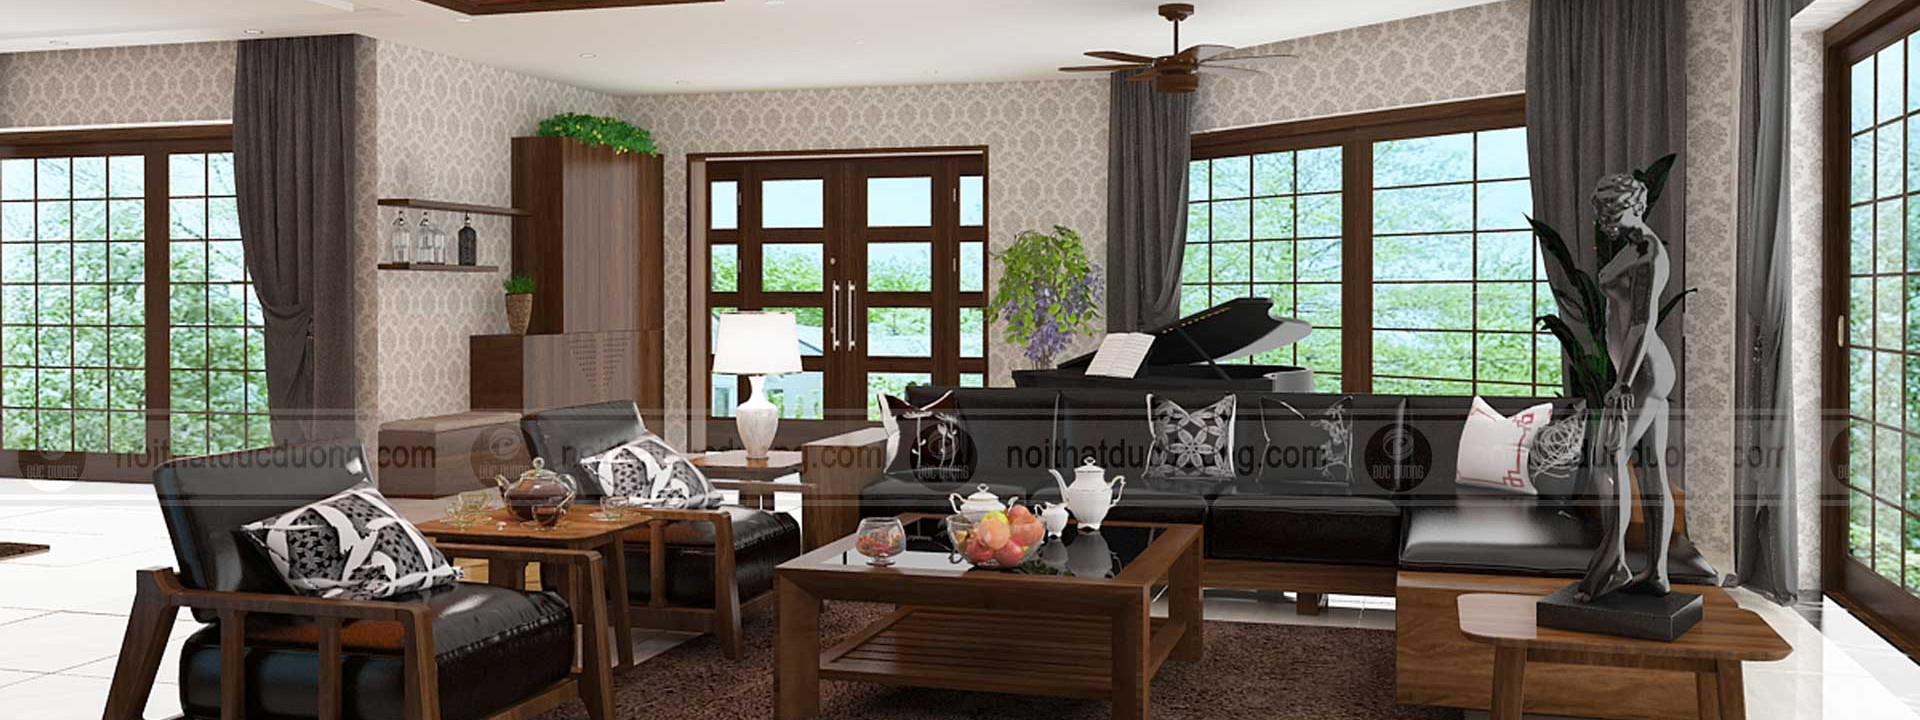 Mẫu thiết kế đồ nội thất đẹp: Sofa, Giường ngủ, Bàn ghế ăn, tủ bếp